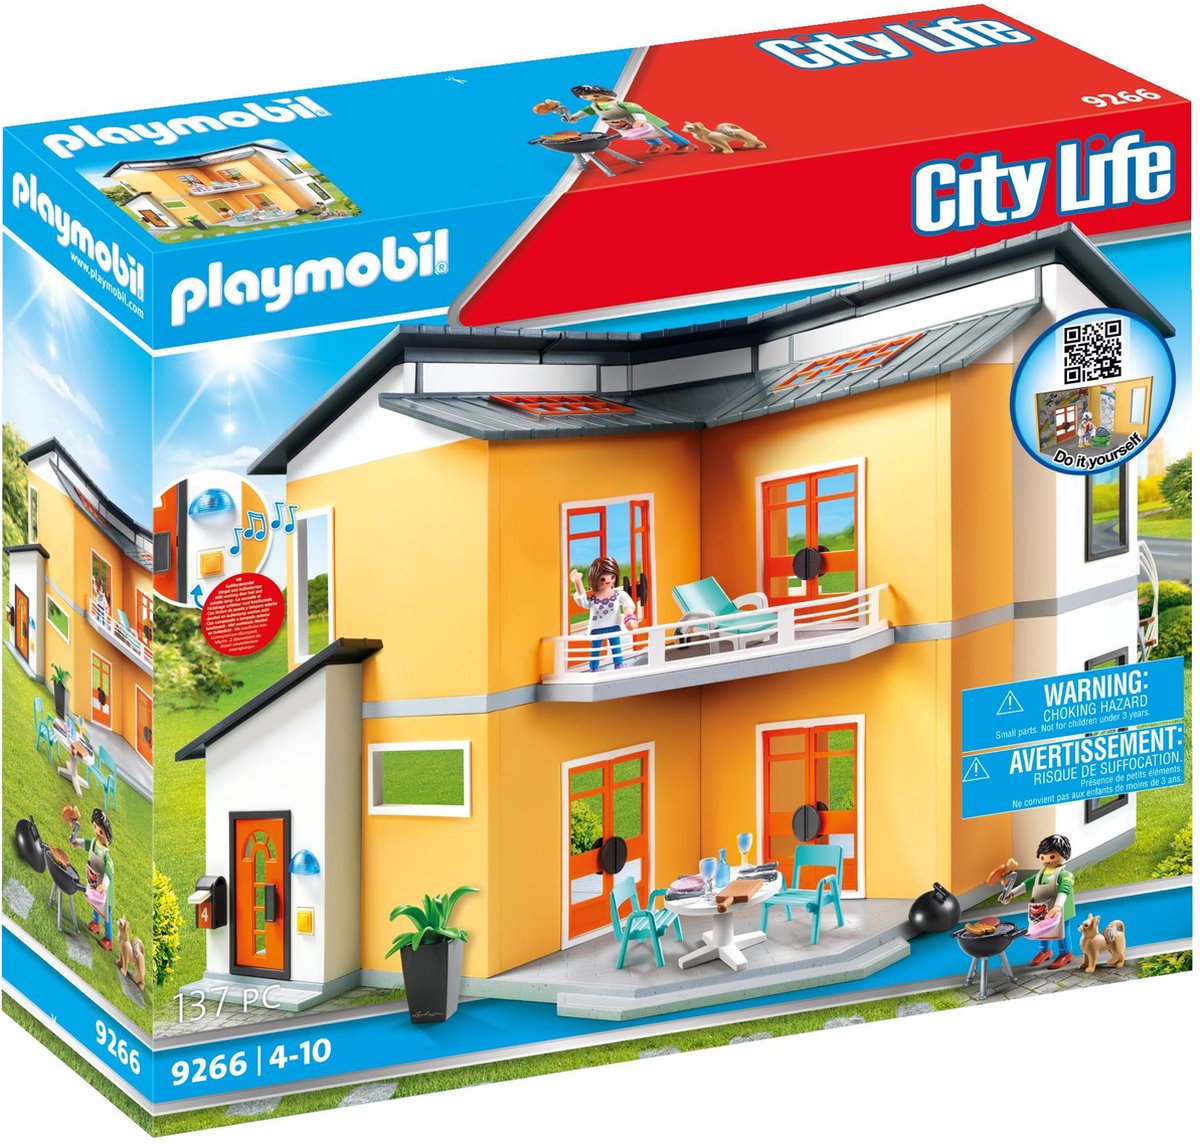 PLAYMOBIL City Life Maison moderne | bol.com